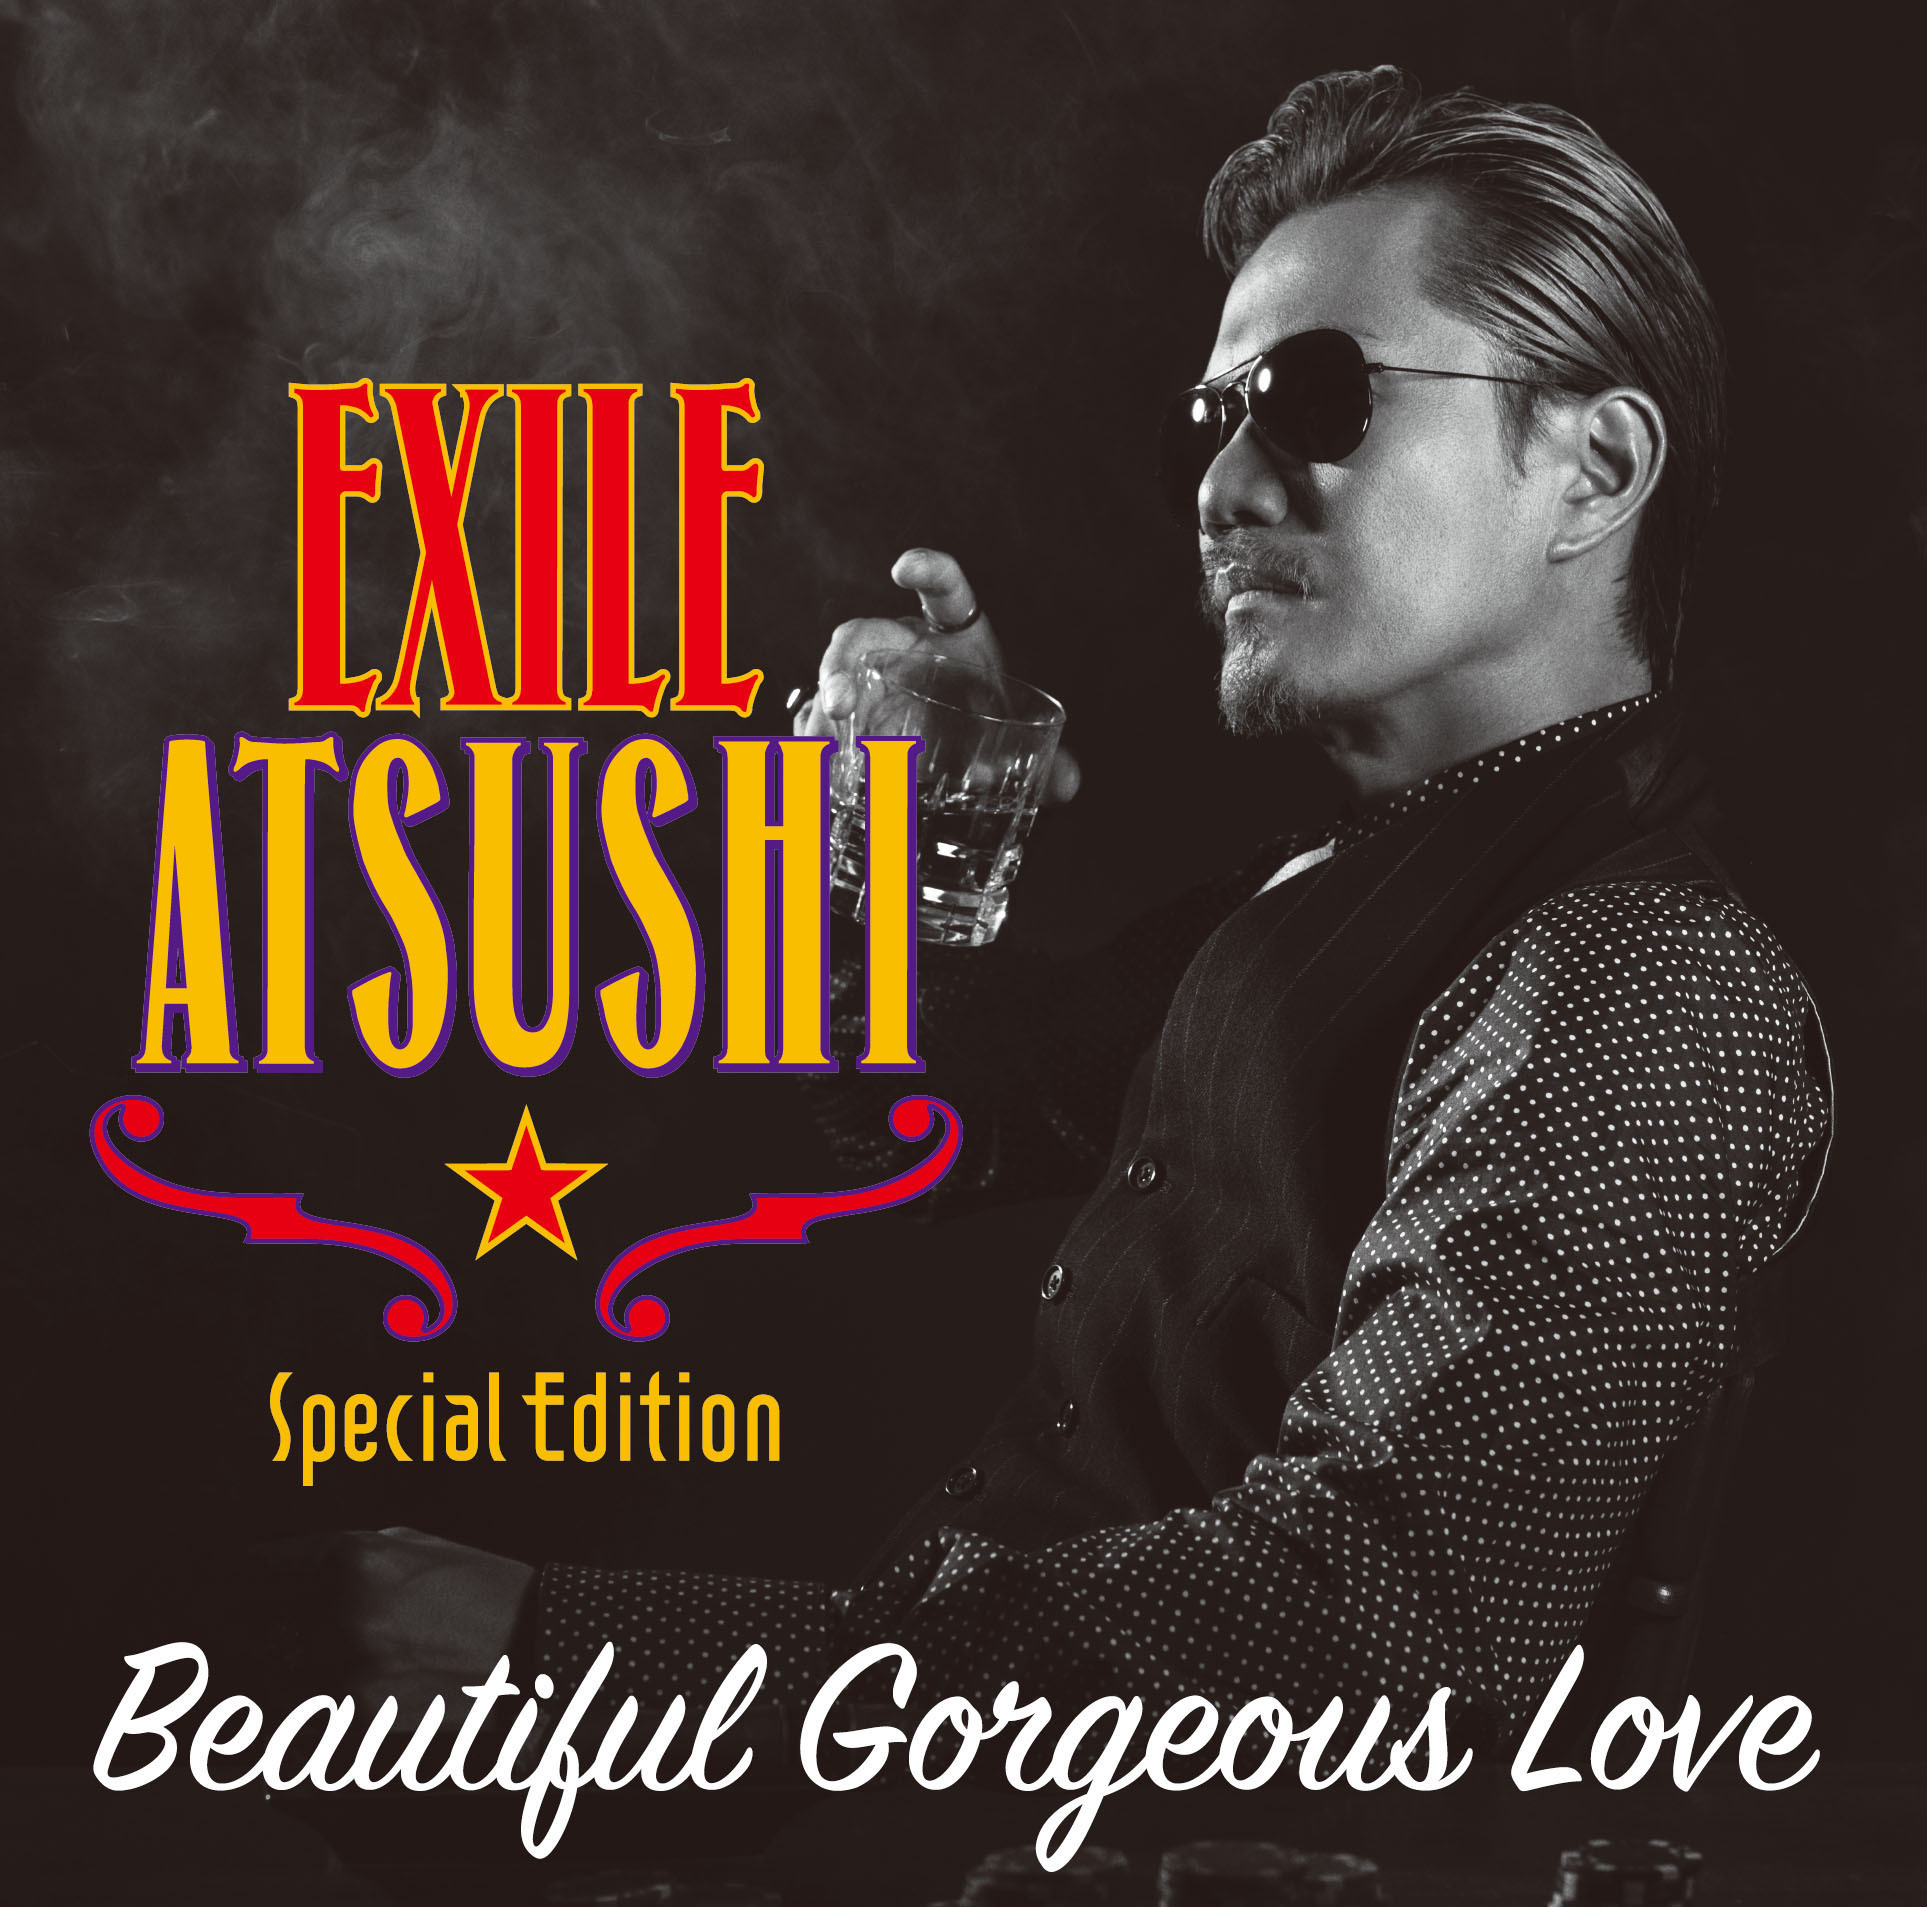 EXILE ATSUSHI ライブ特番『EXILE ATSUSHI Premium Live』のダイジェスト映像を公開 | SPICE